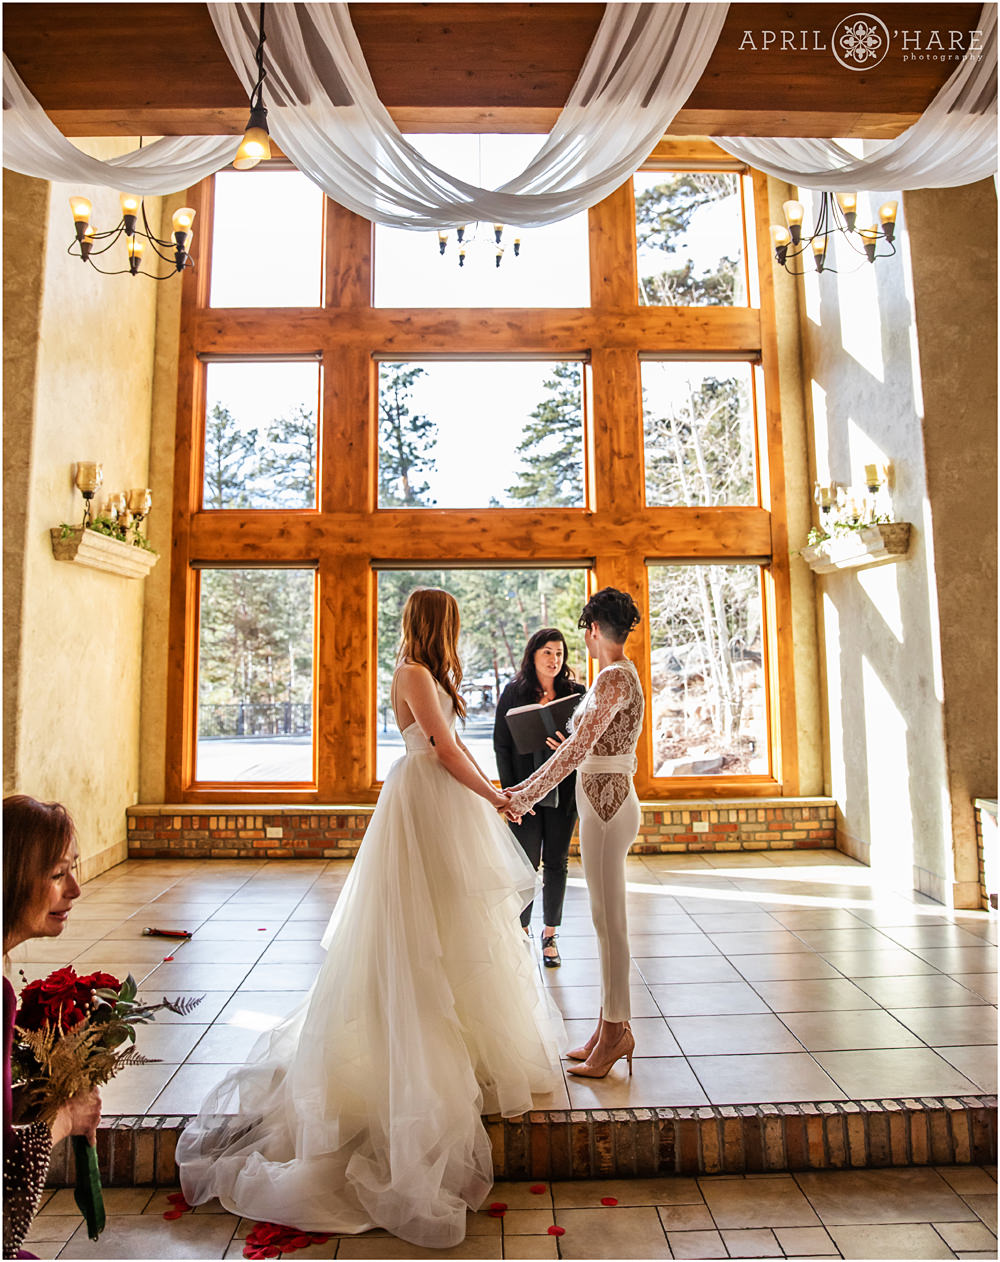 Pretty Indoor wedding ceremony at Della Terra in Estes Park